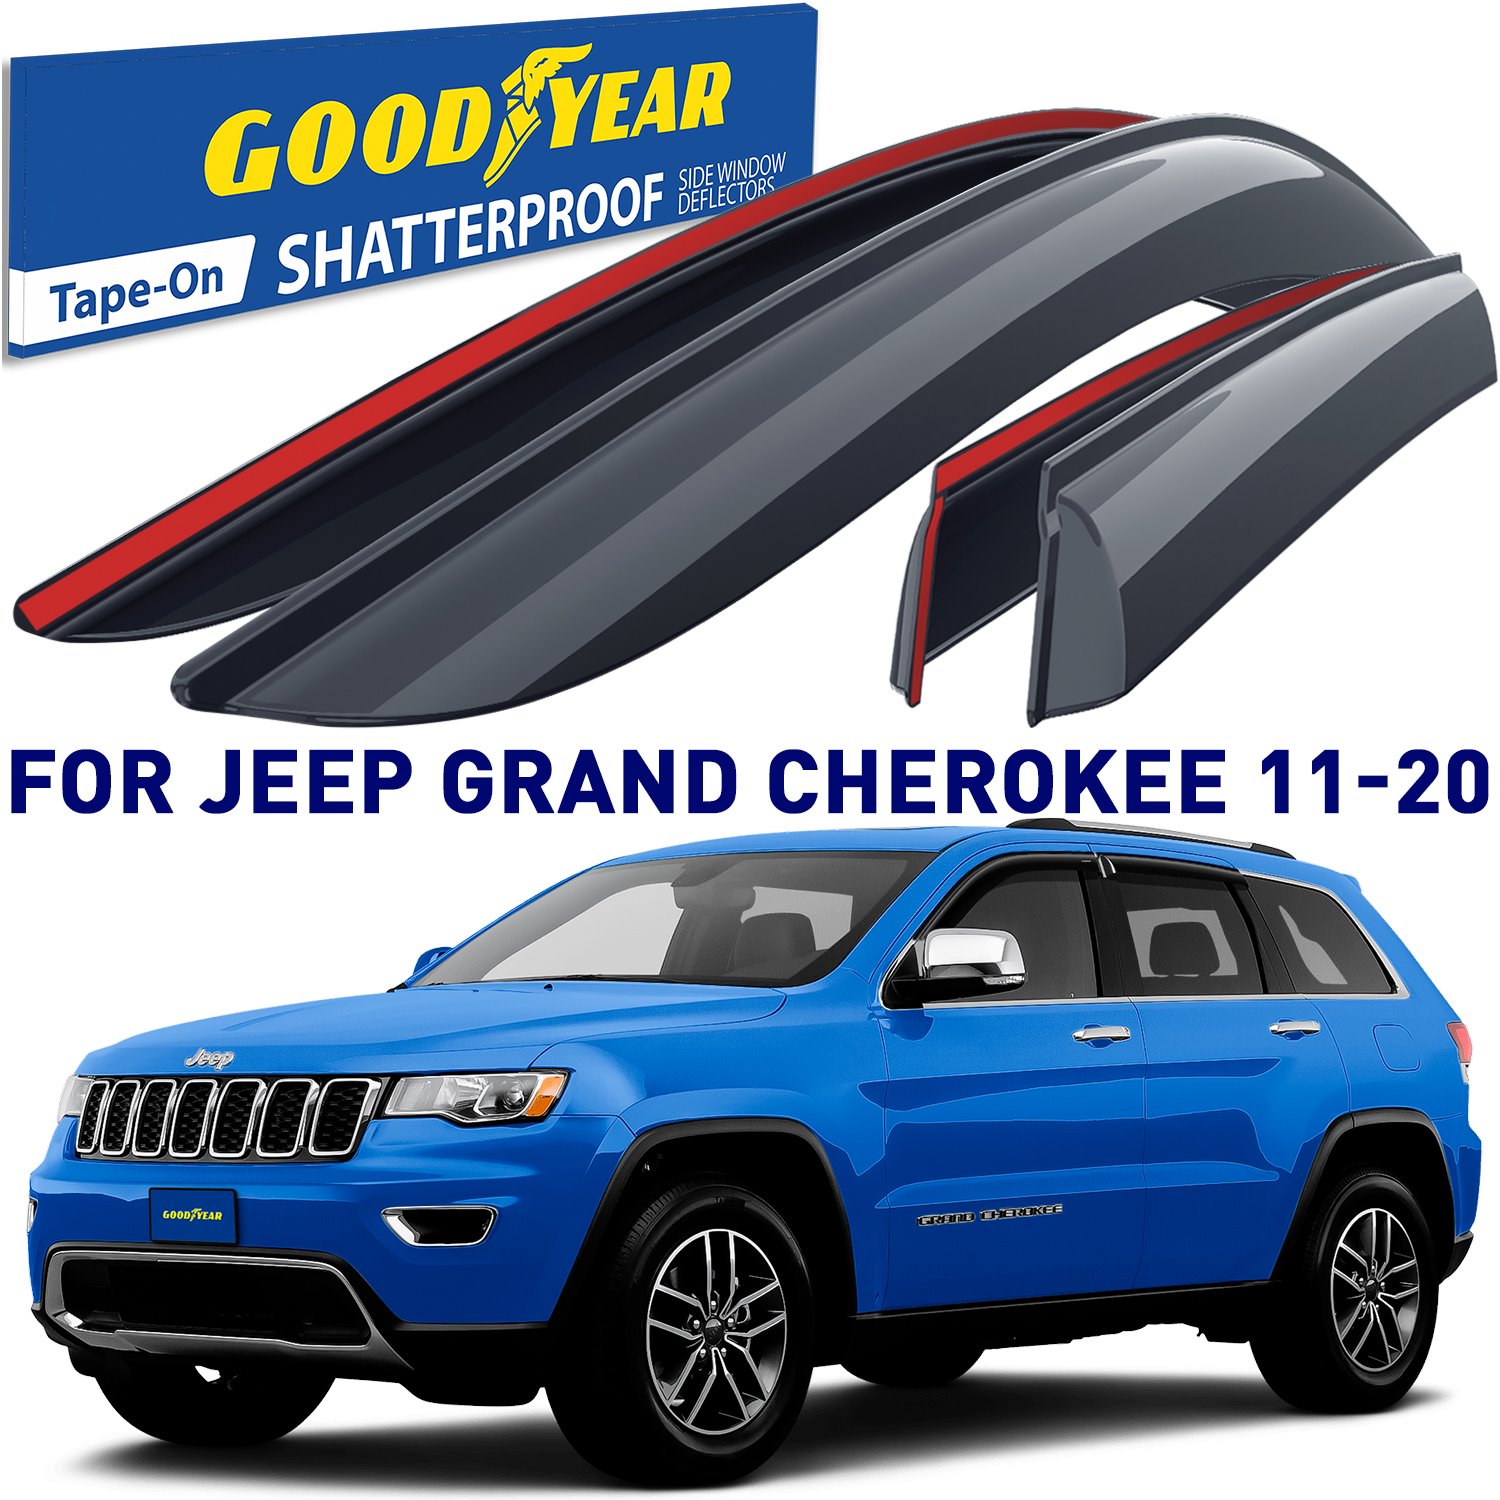 Goodyear Shatterproof Side Window Deflectors for 2011-2020 Jeep